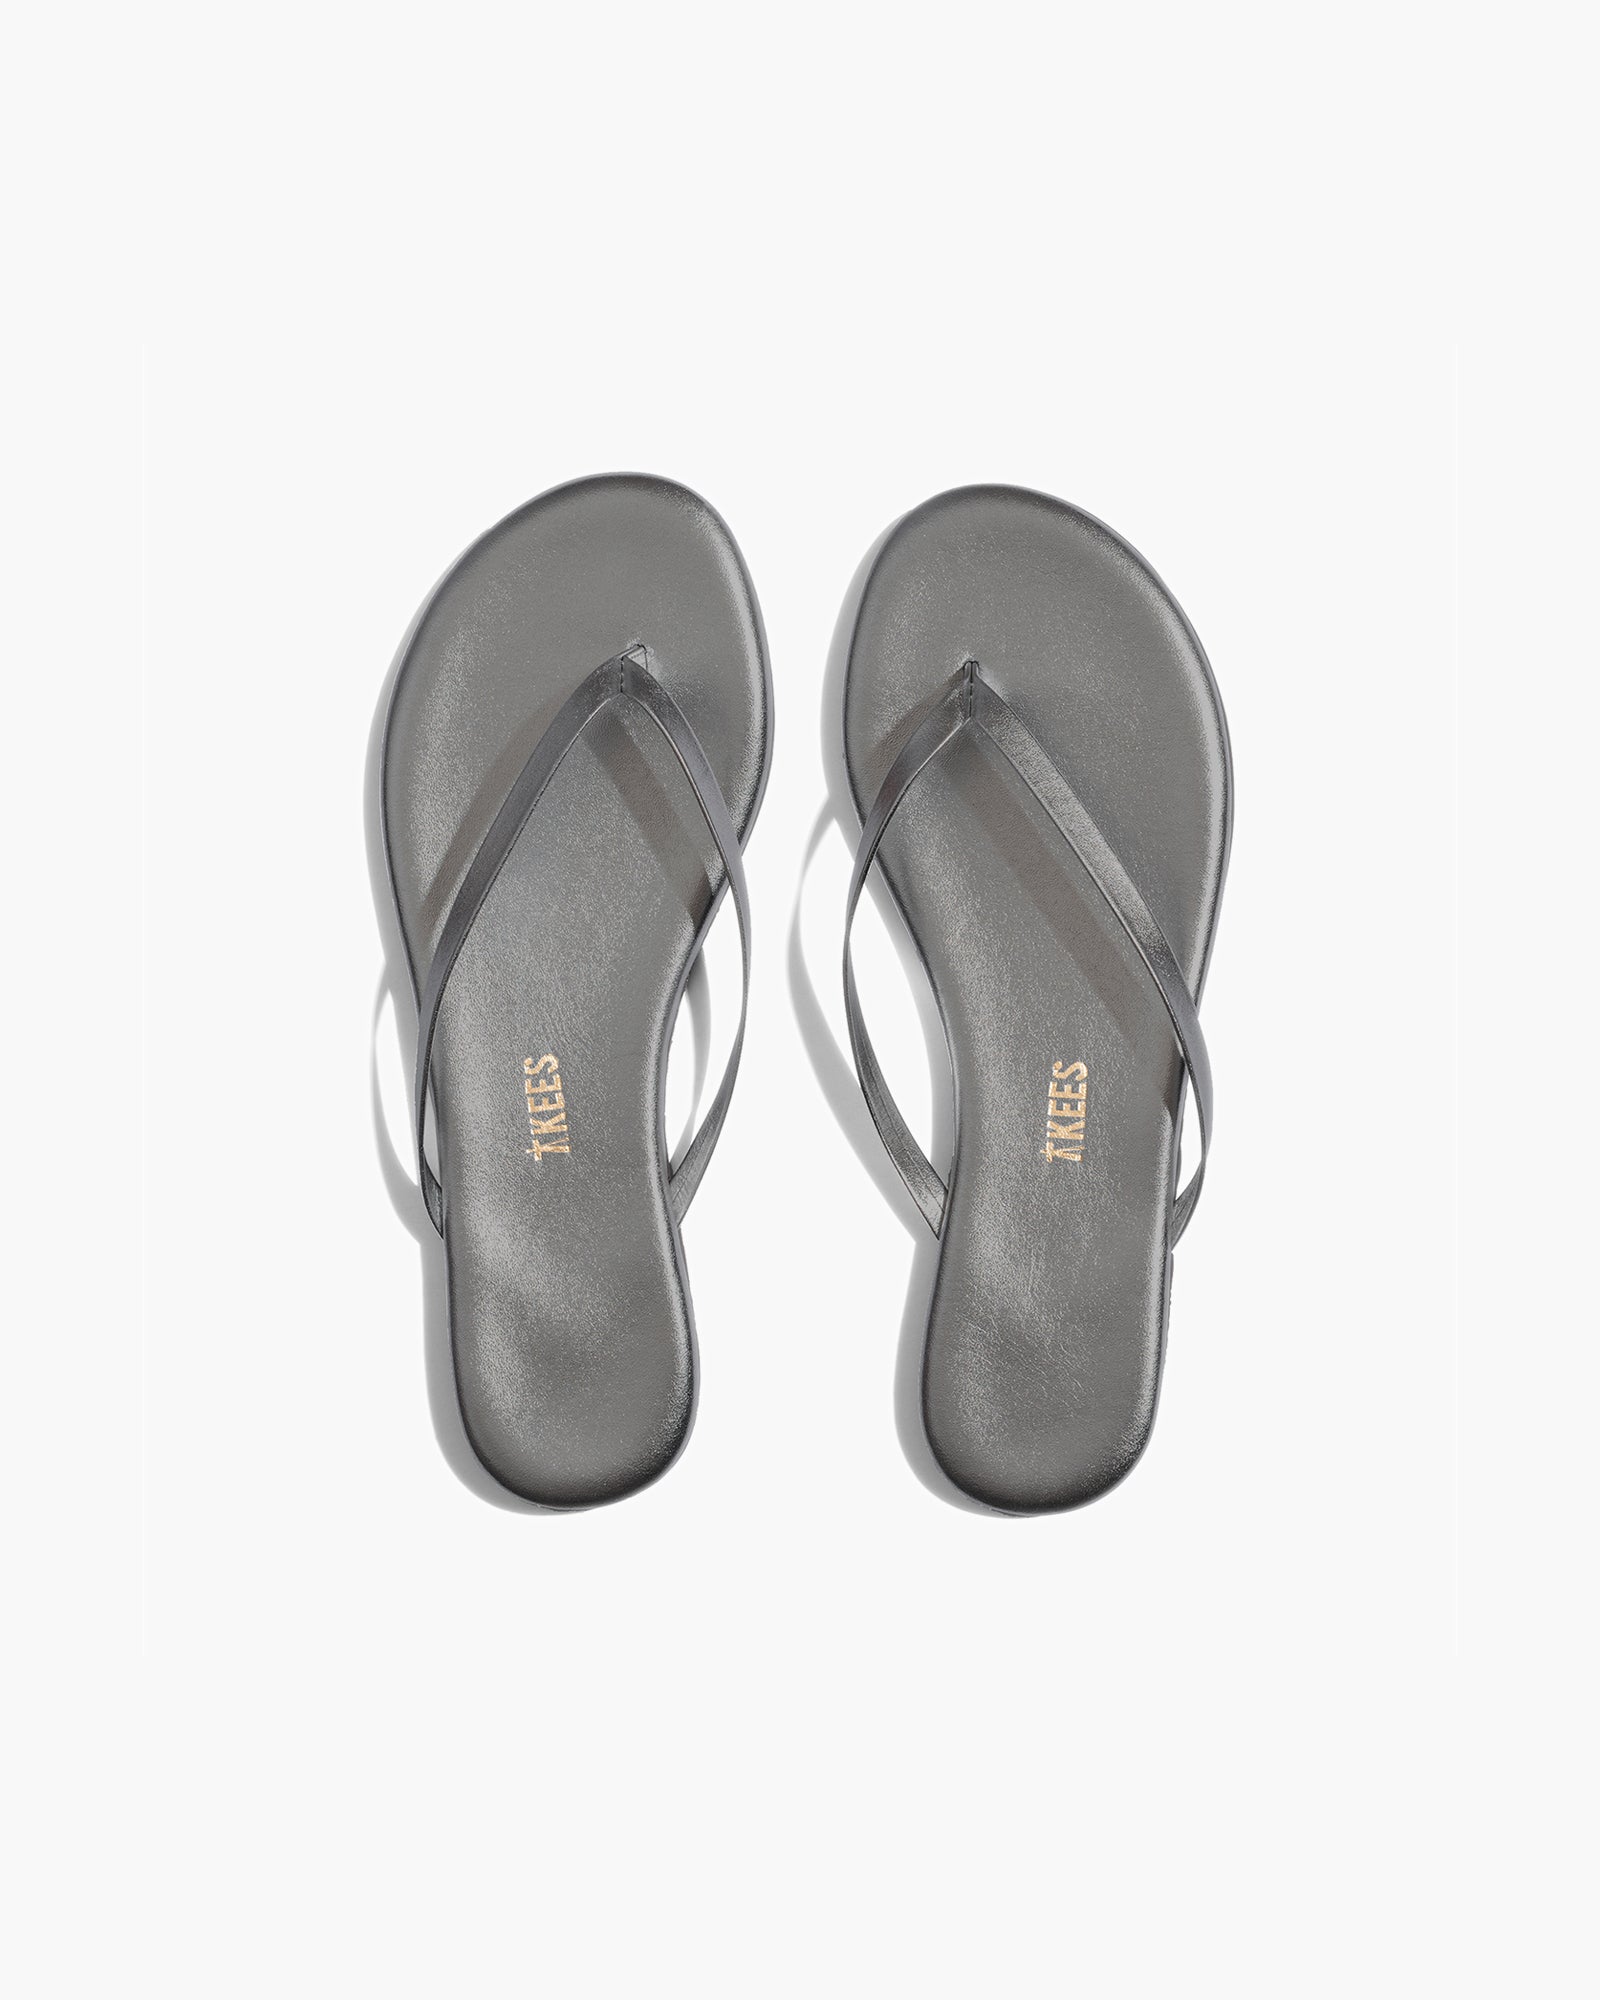 Lily Metallics in Frosty Grey | Flip-Flops | Women's Footwear – TKEES